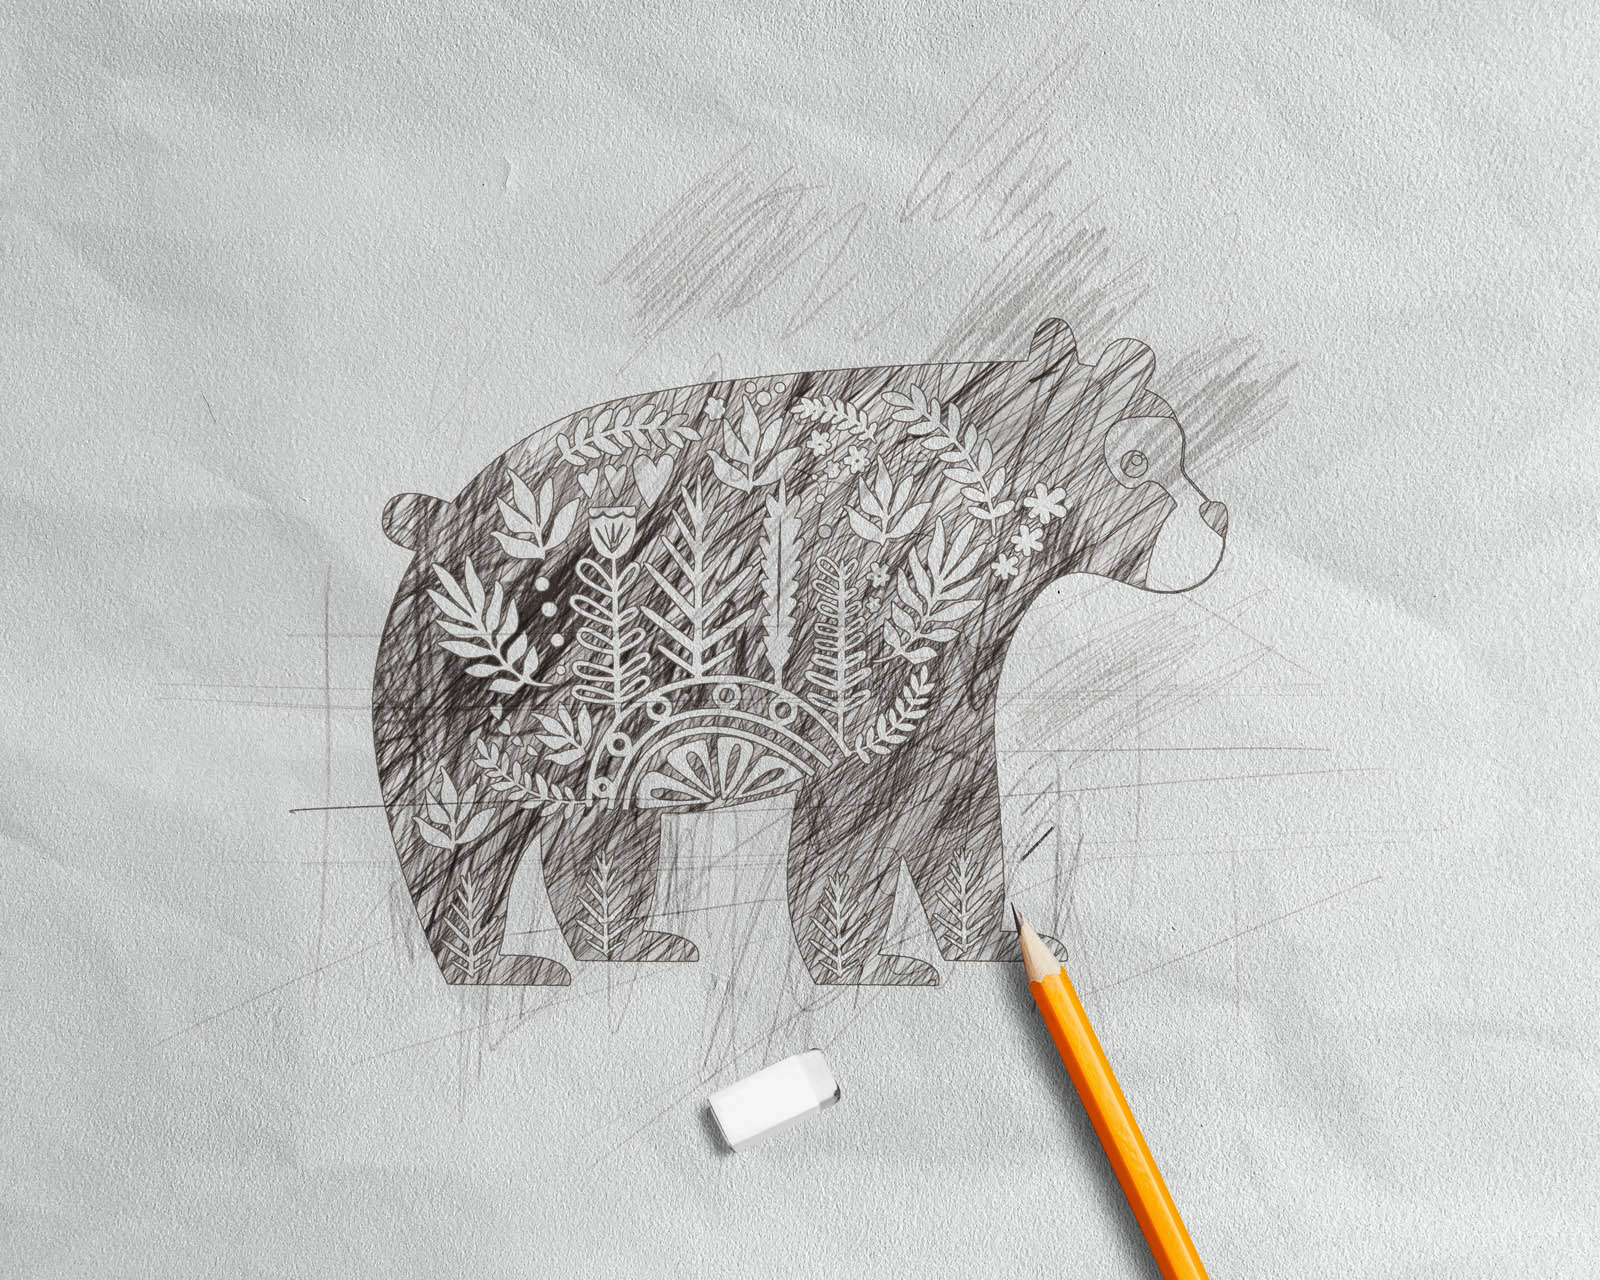 Pencil Sketch Effect